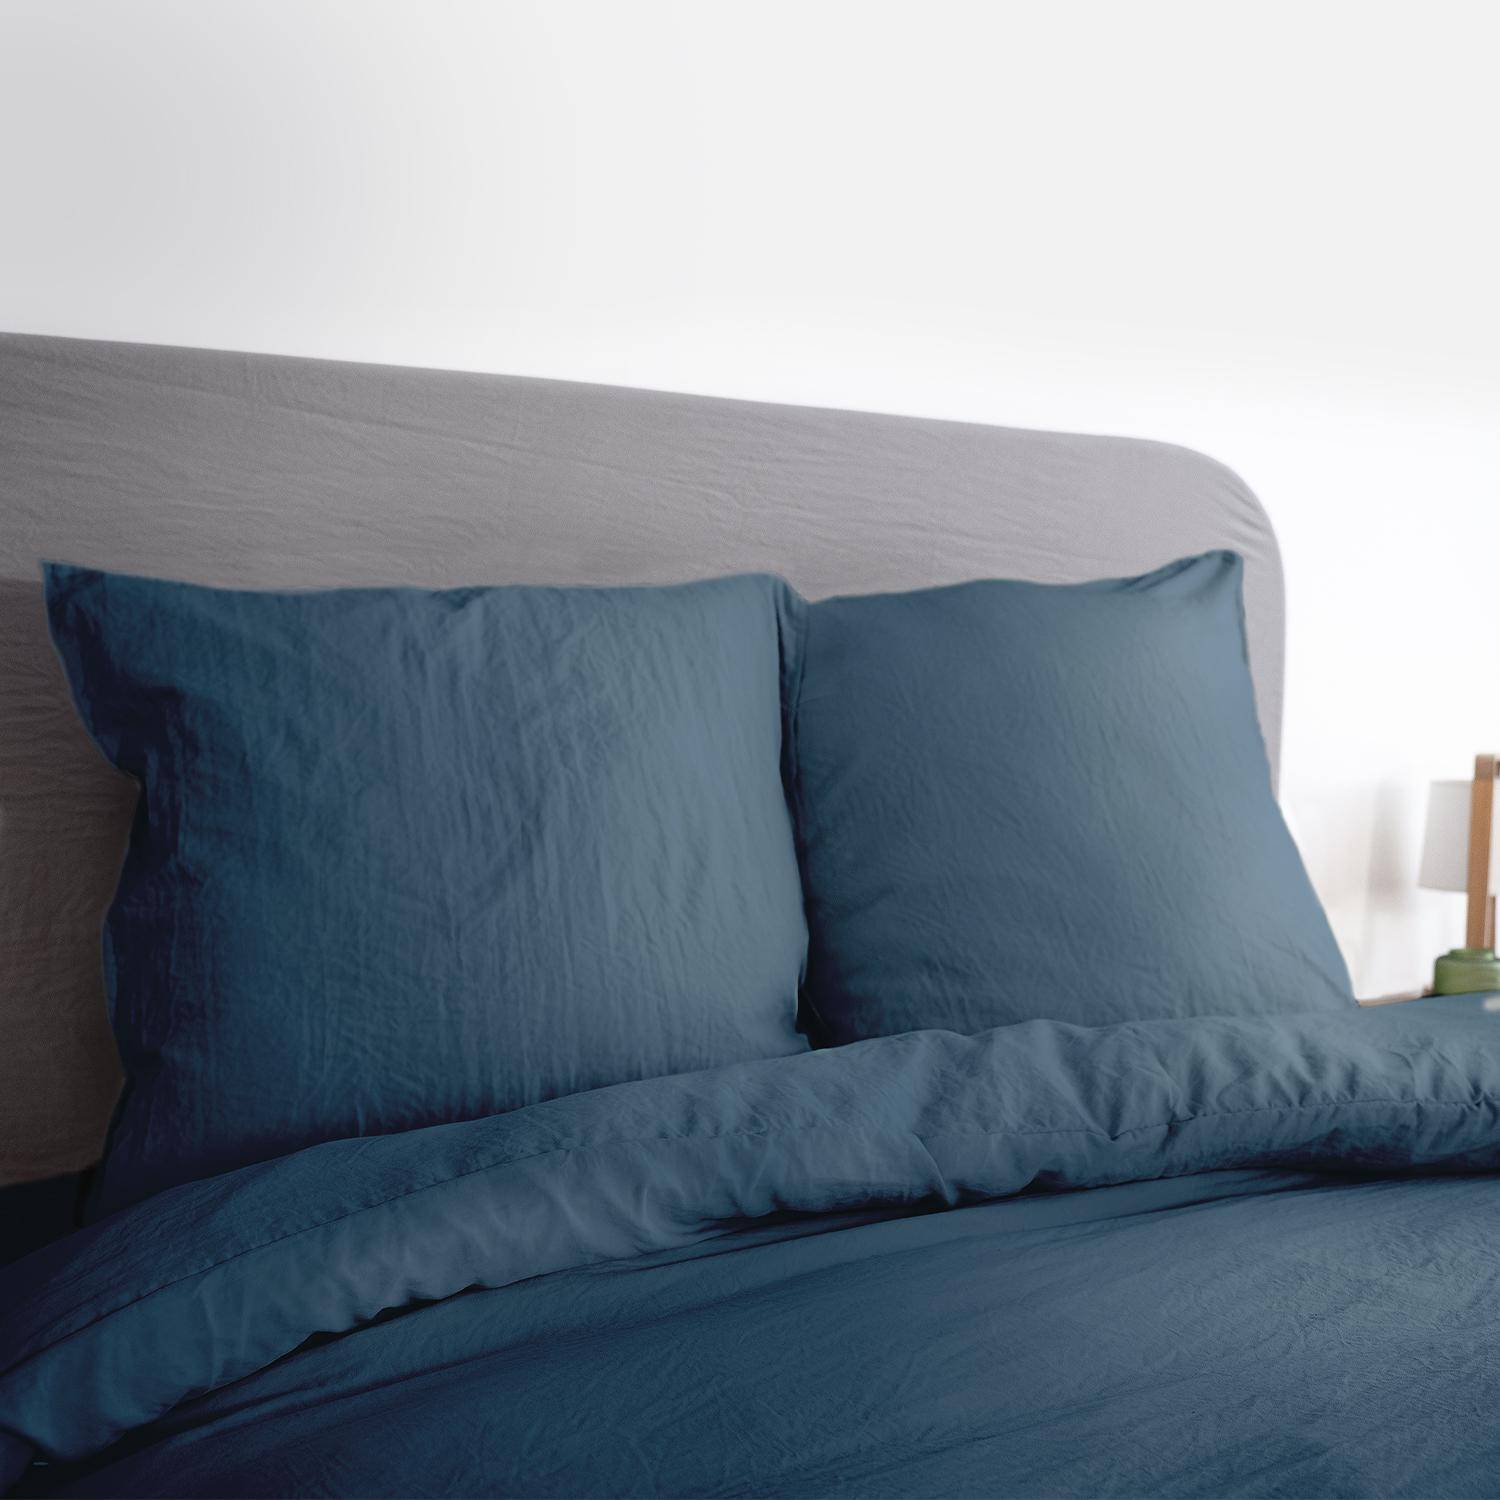 Bettwäsche-Set aus vorgewaschener Mikrofaser in nachtblau 240 x 220 cm für Doppelbetten, 1 Bettbezug und 2 Kissenbezüge Photo2